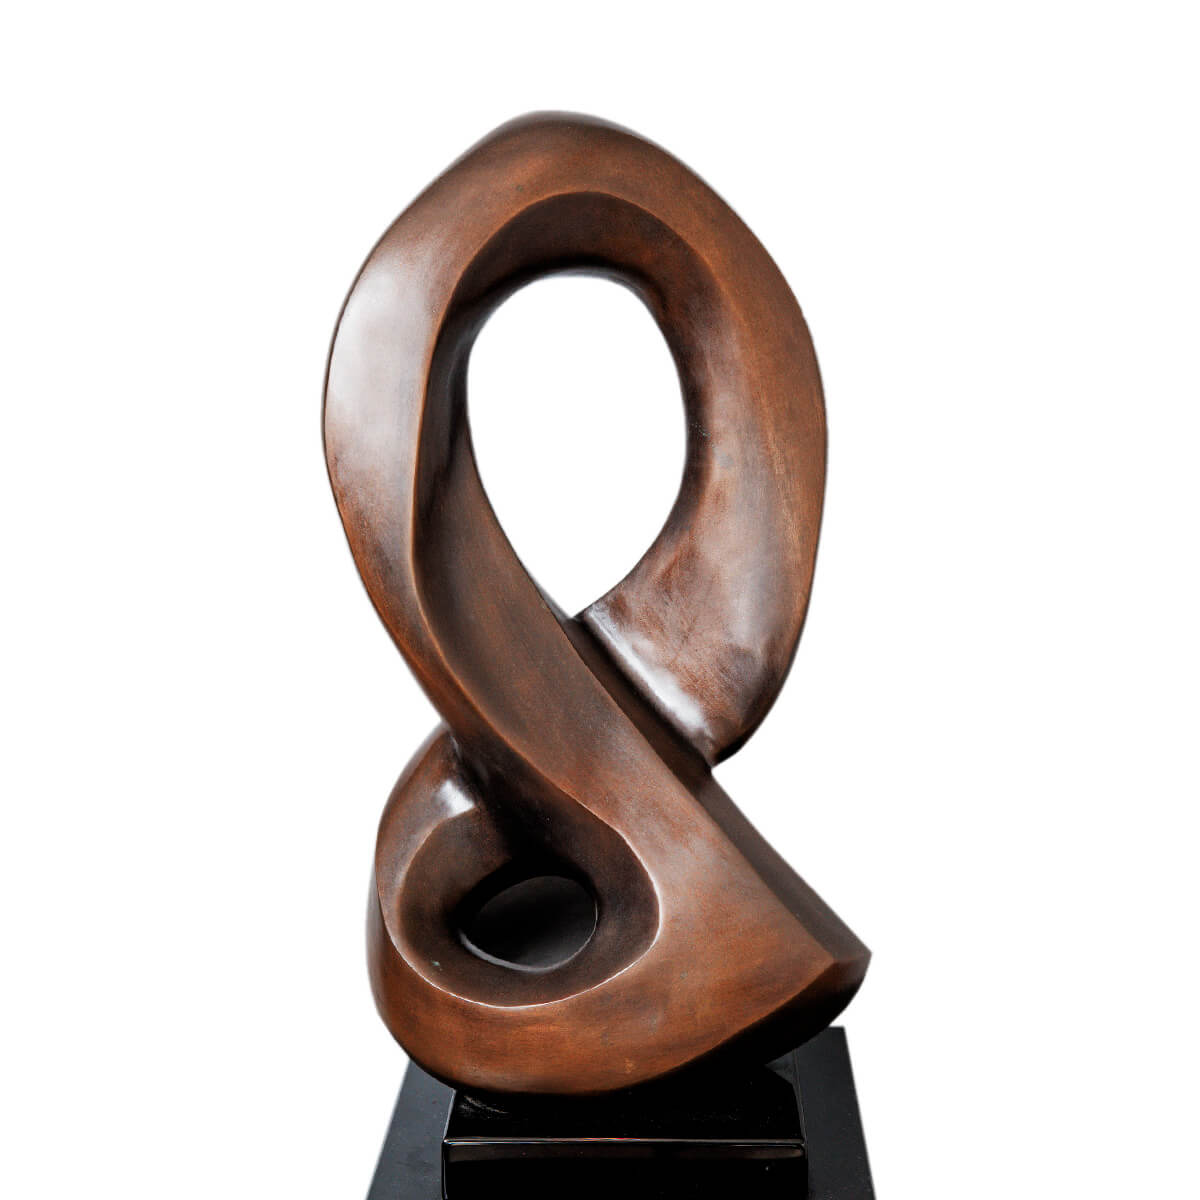 Robert-Helle-Sculpture-Gallery-Music-1-1200x1200